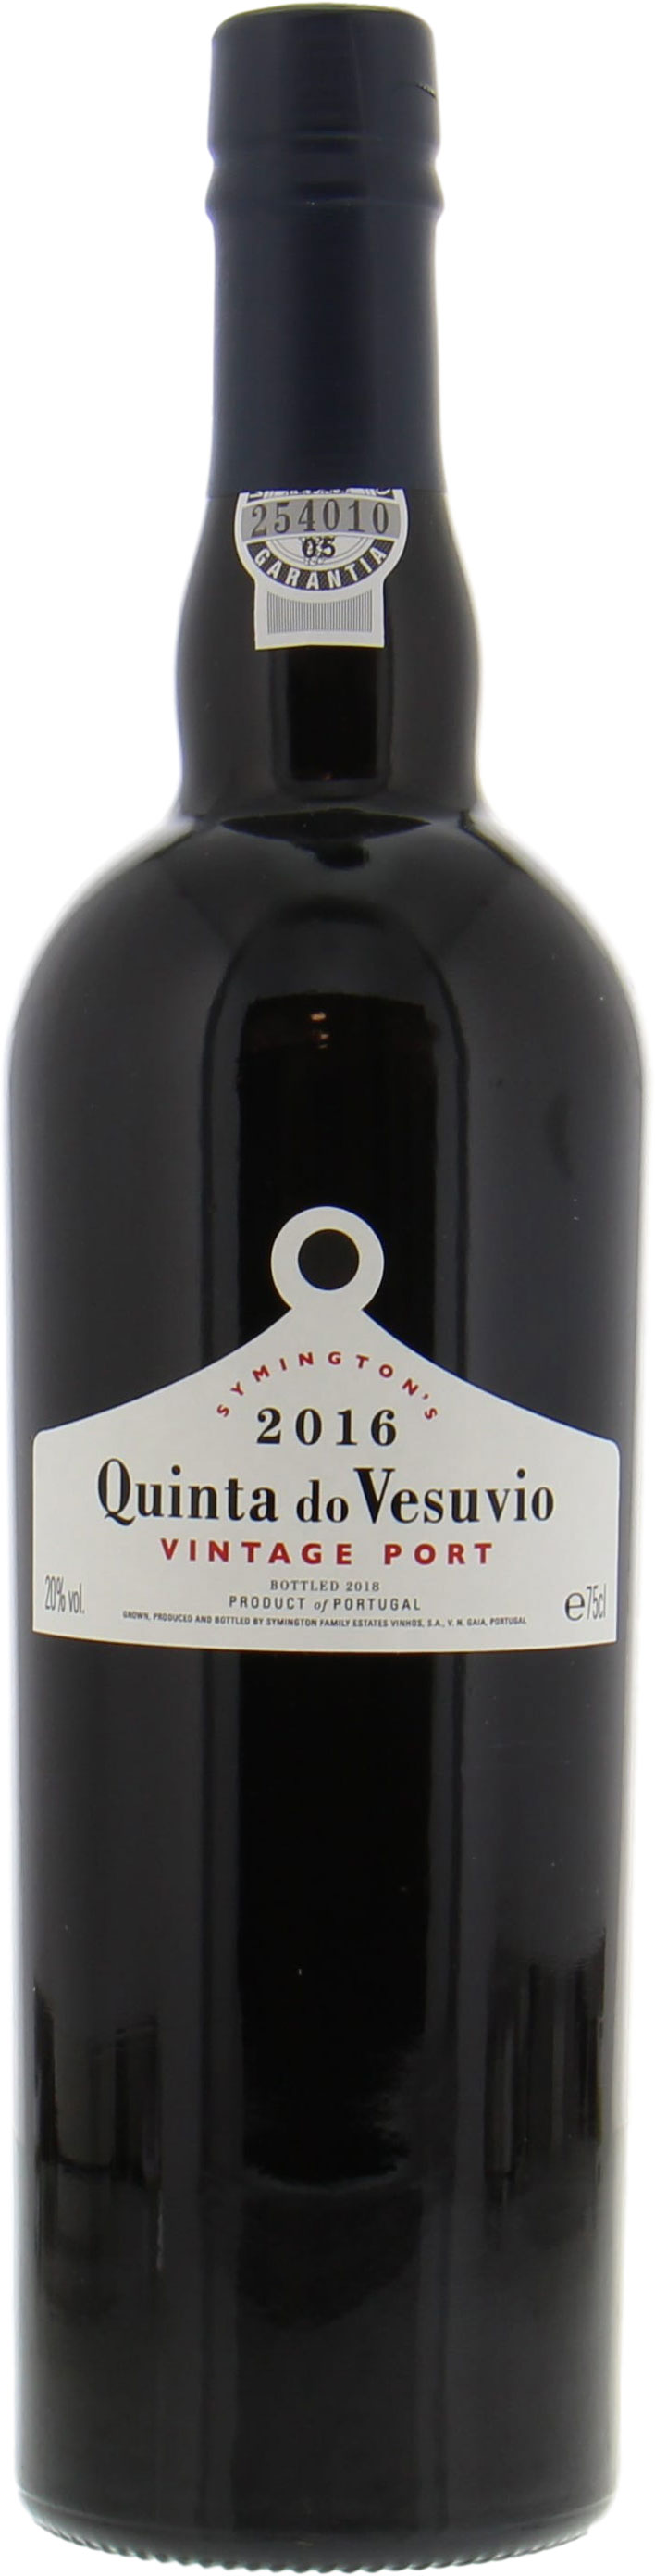 Quinta do Vesuvio - Vintage Port 2016